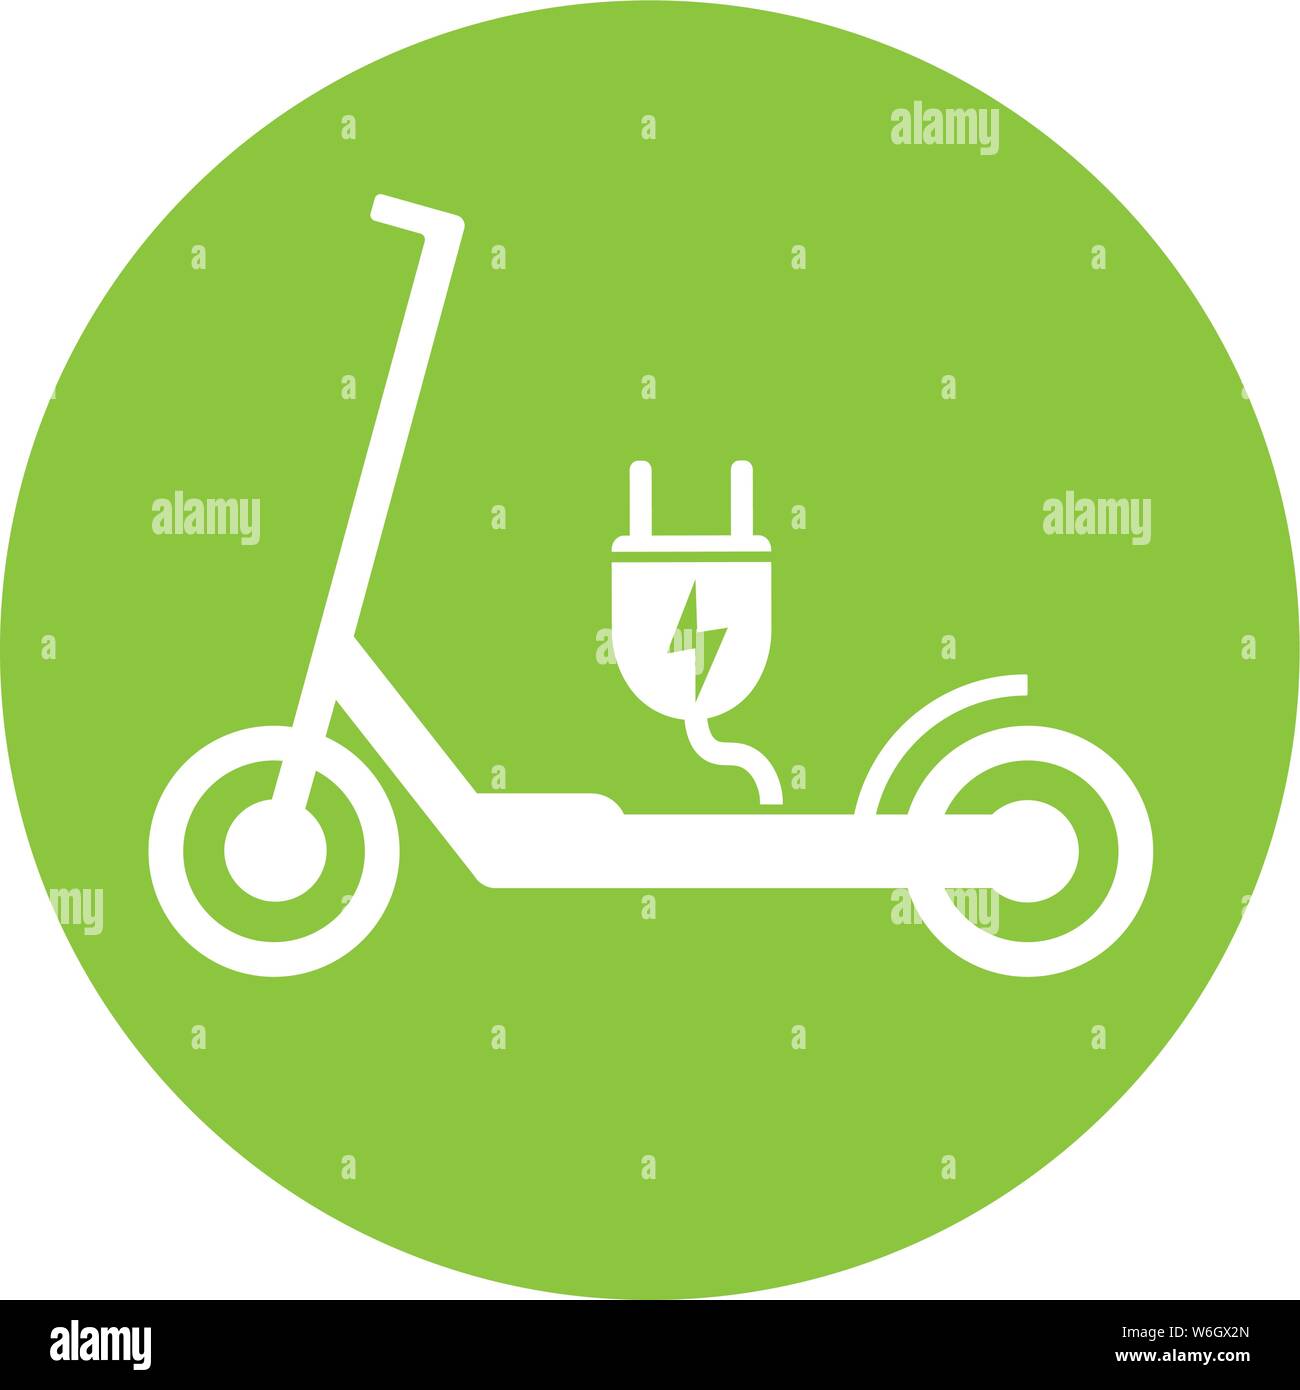 Spingere elettrico scooter e-scooter simbolo con plug illustrazione vettoriale Illustrazione Vettoriale